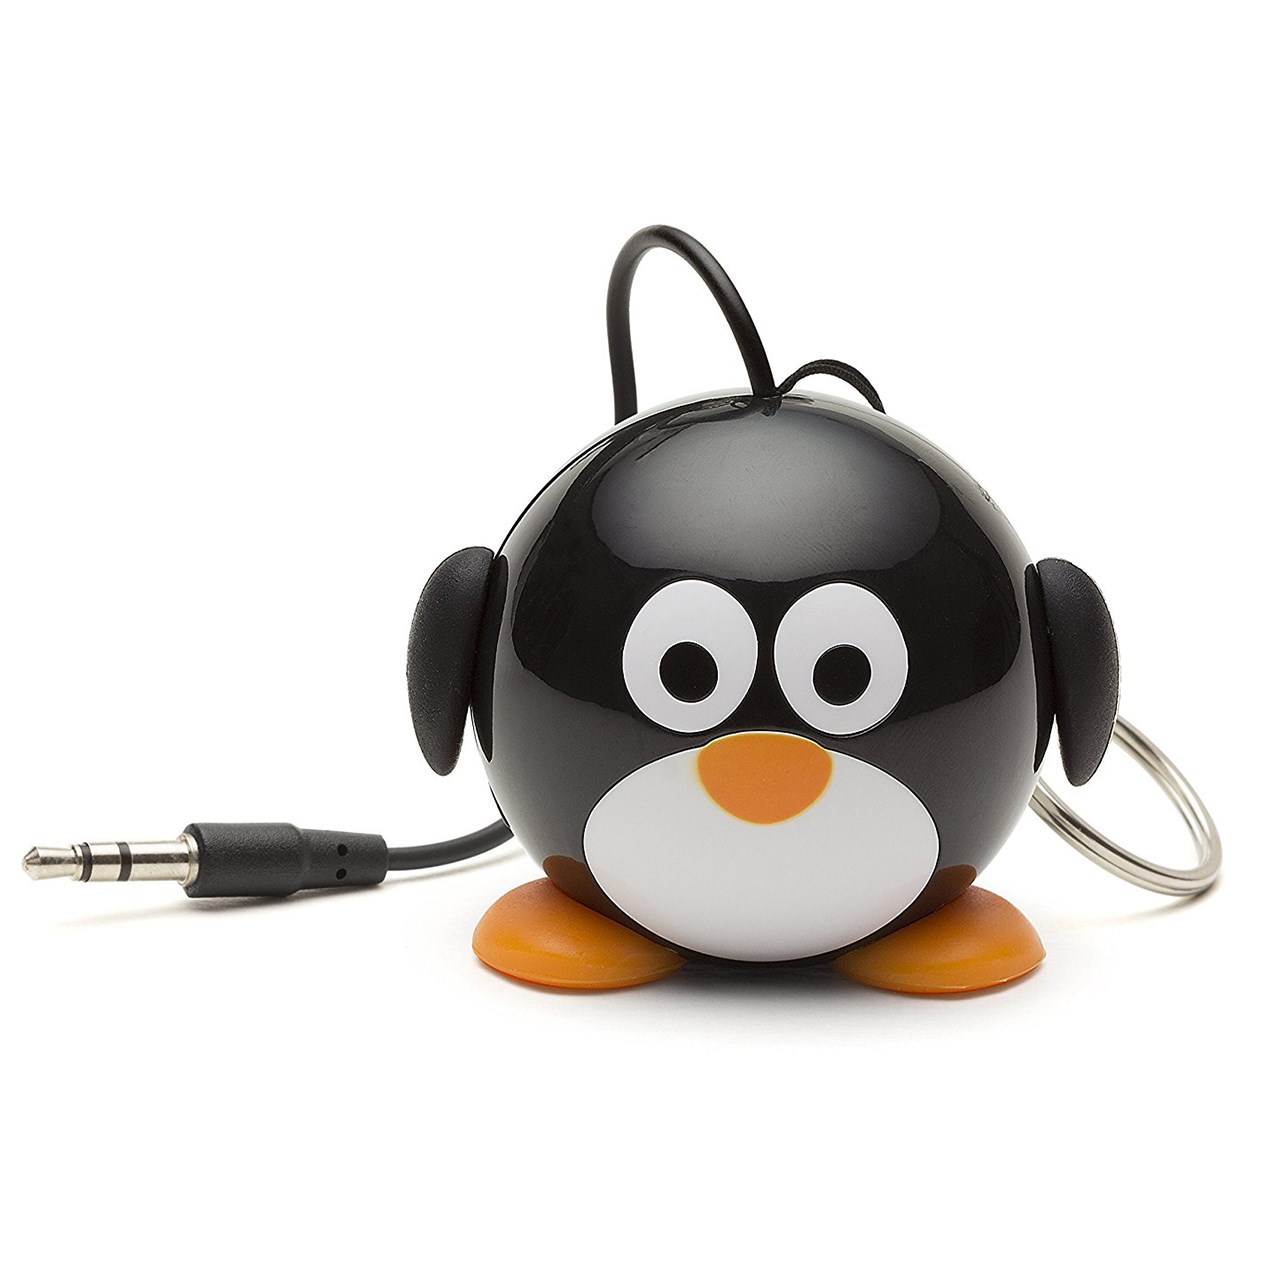 اسپیکر قابل حمل مای دودلز مدل Mini Buddy Penguin